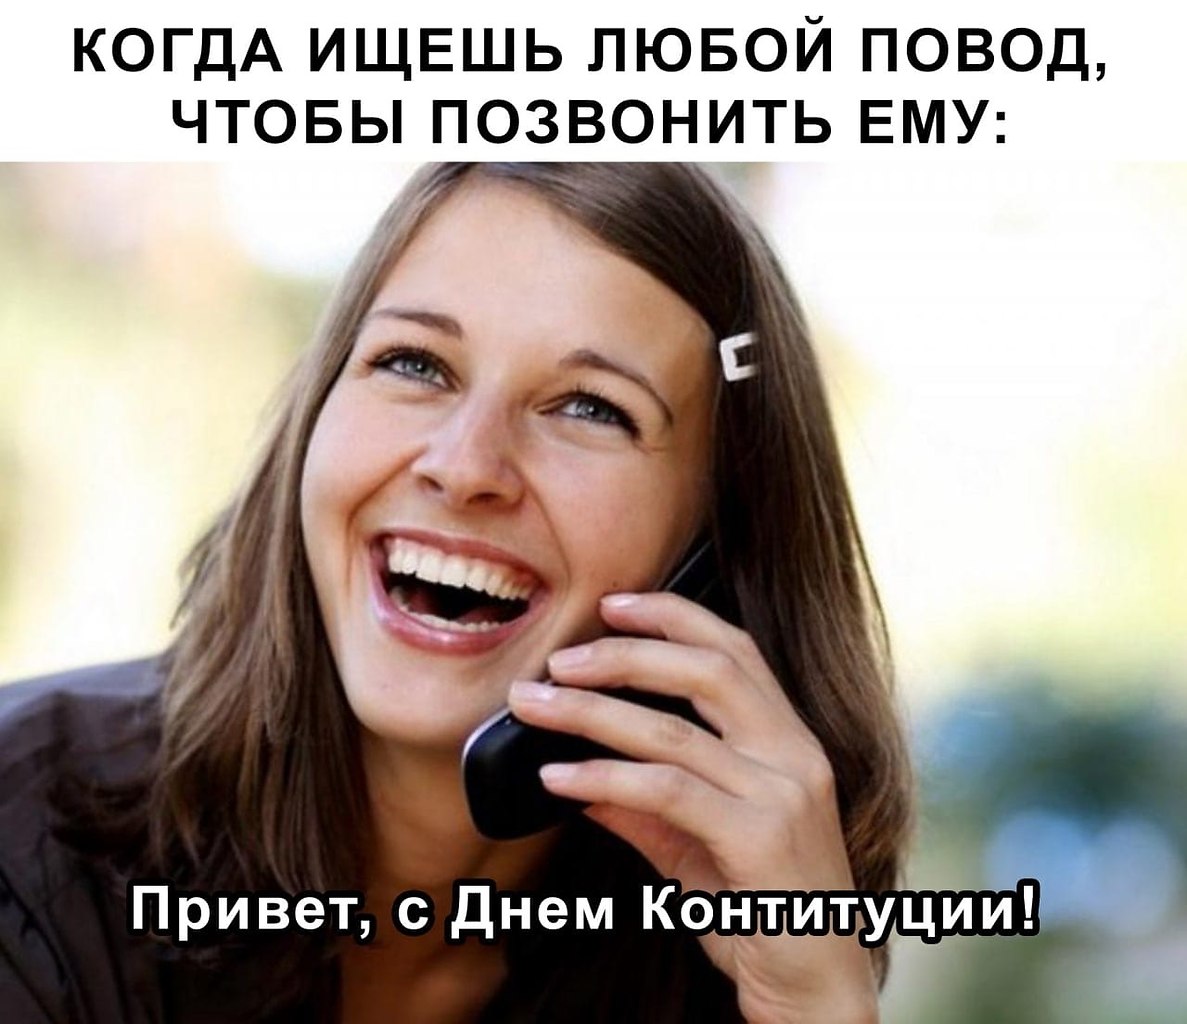 Бесплатное общение на телефоне. Девушка звонит. Звонит другу. Смех с телефоном. Девушка по телефону удивляется.